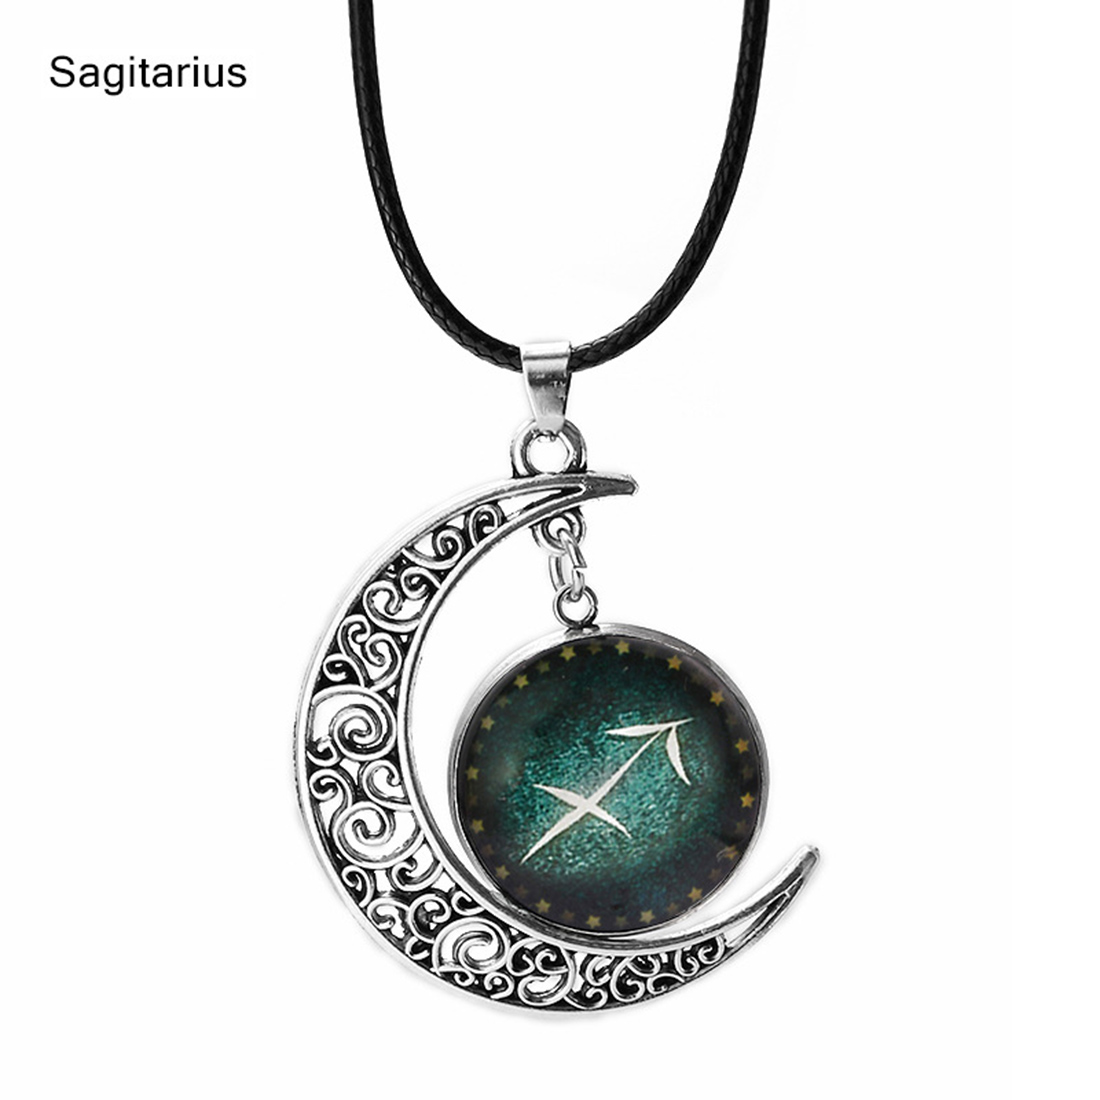 7:Sagittarius